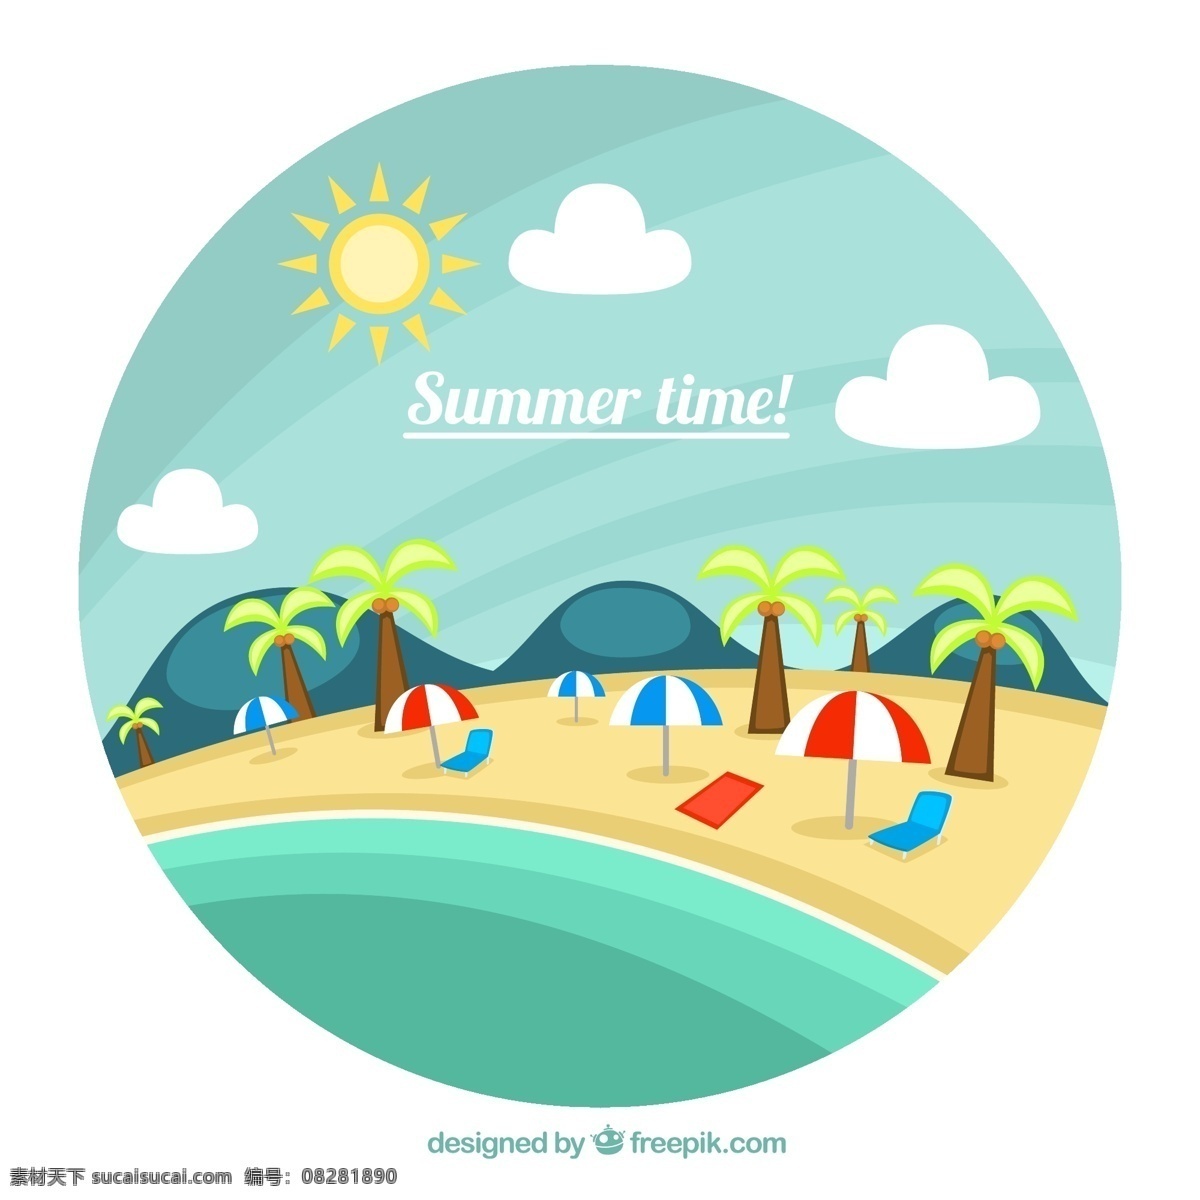 圆形 沙滩 风景 插画 矢量 椰子树 遮阳伞 躺椅 山 云朵 太阳 大海 海滩 夏 度假 矢量图 白色